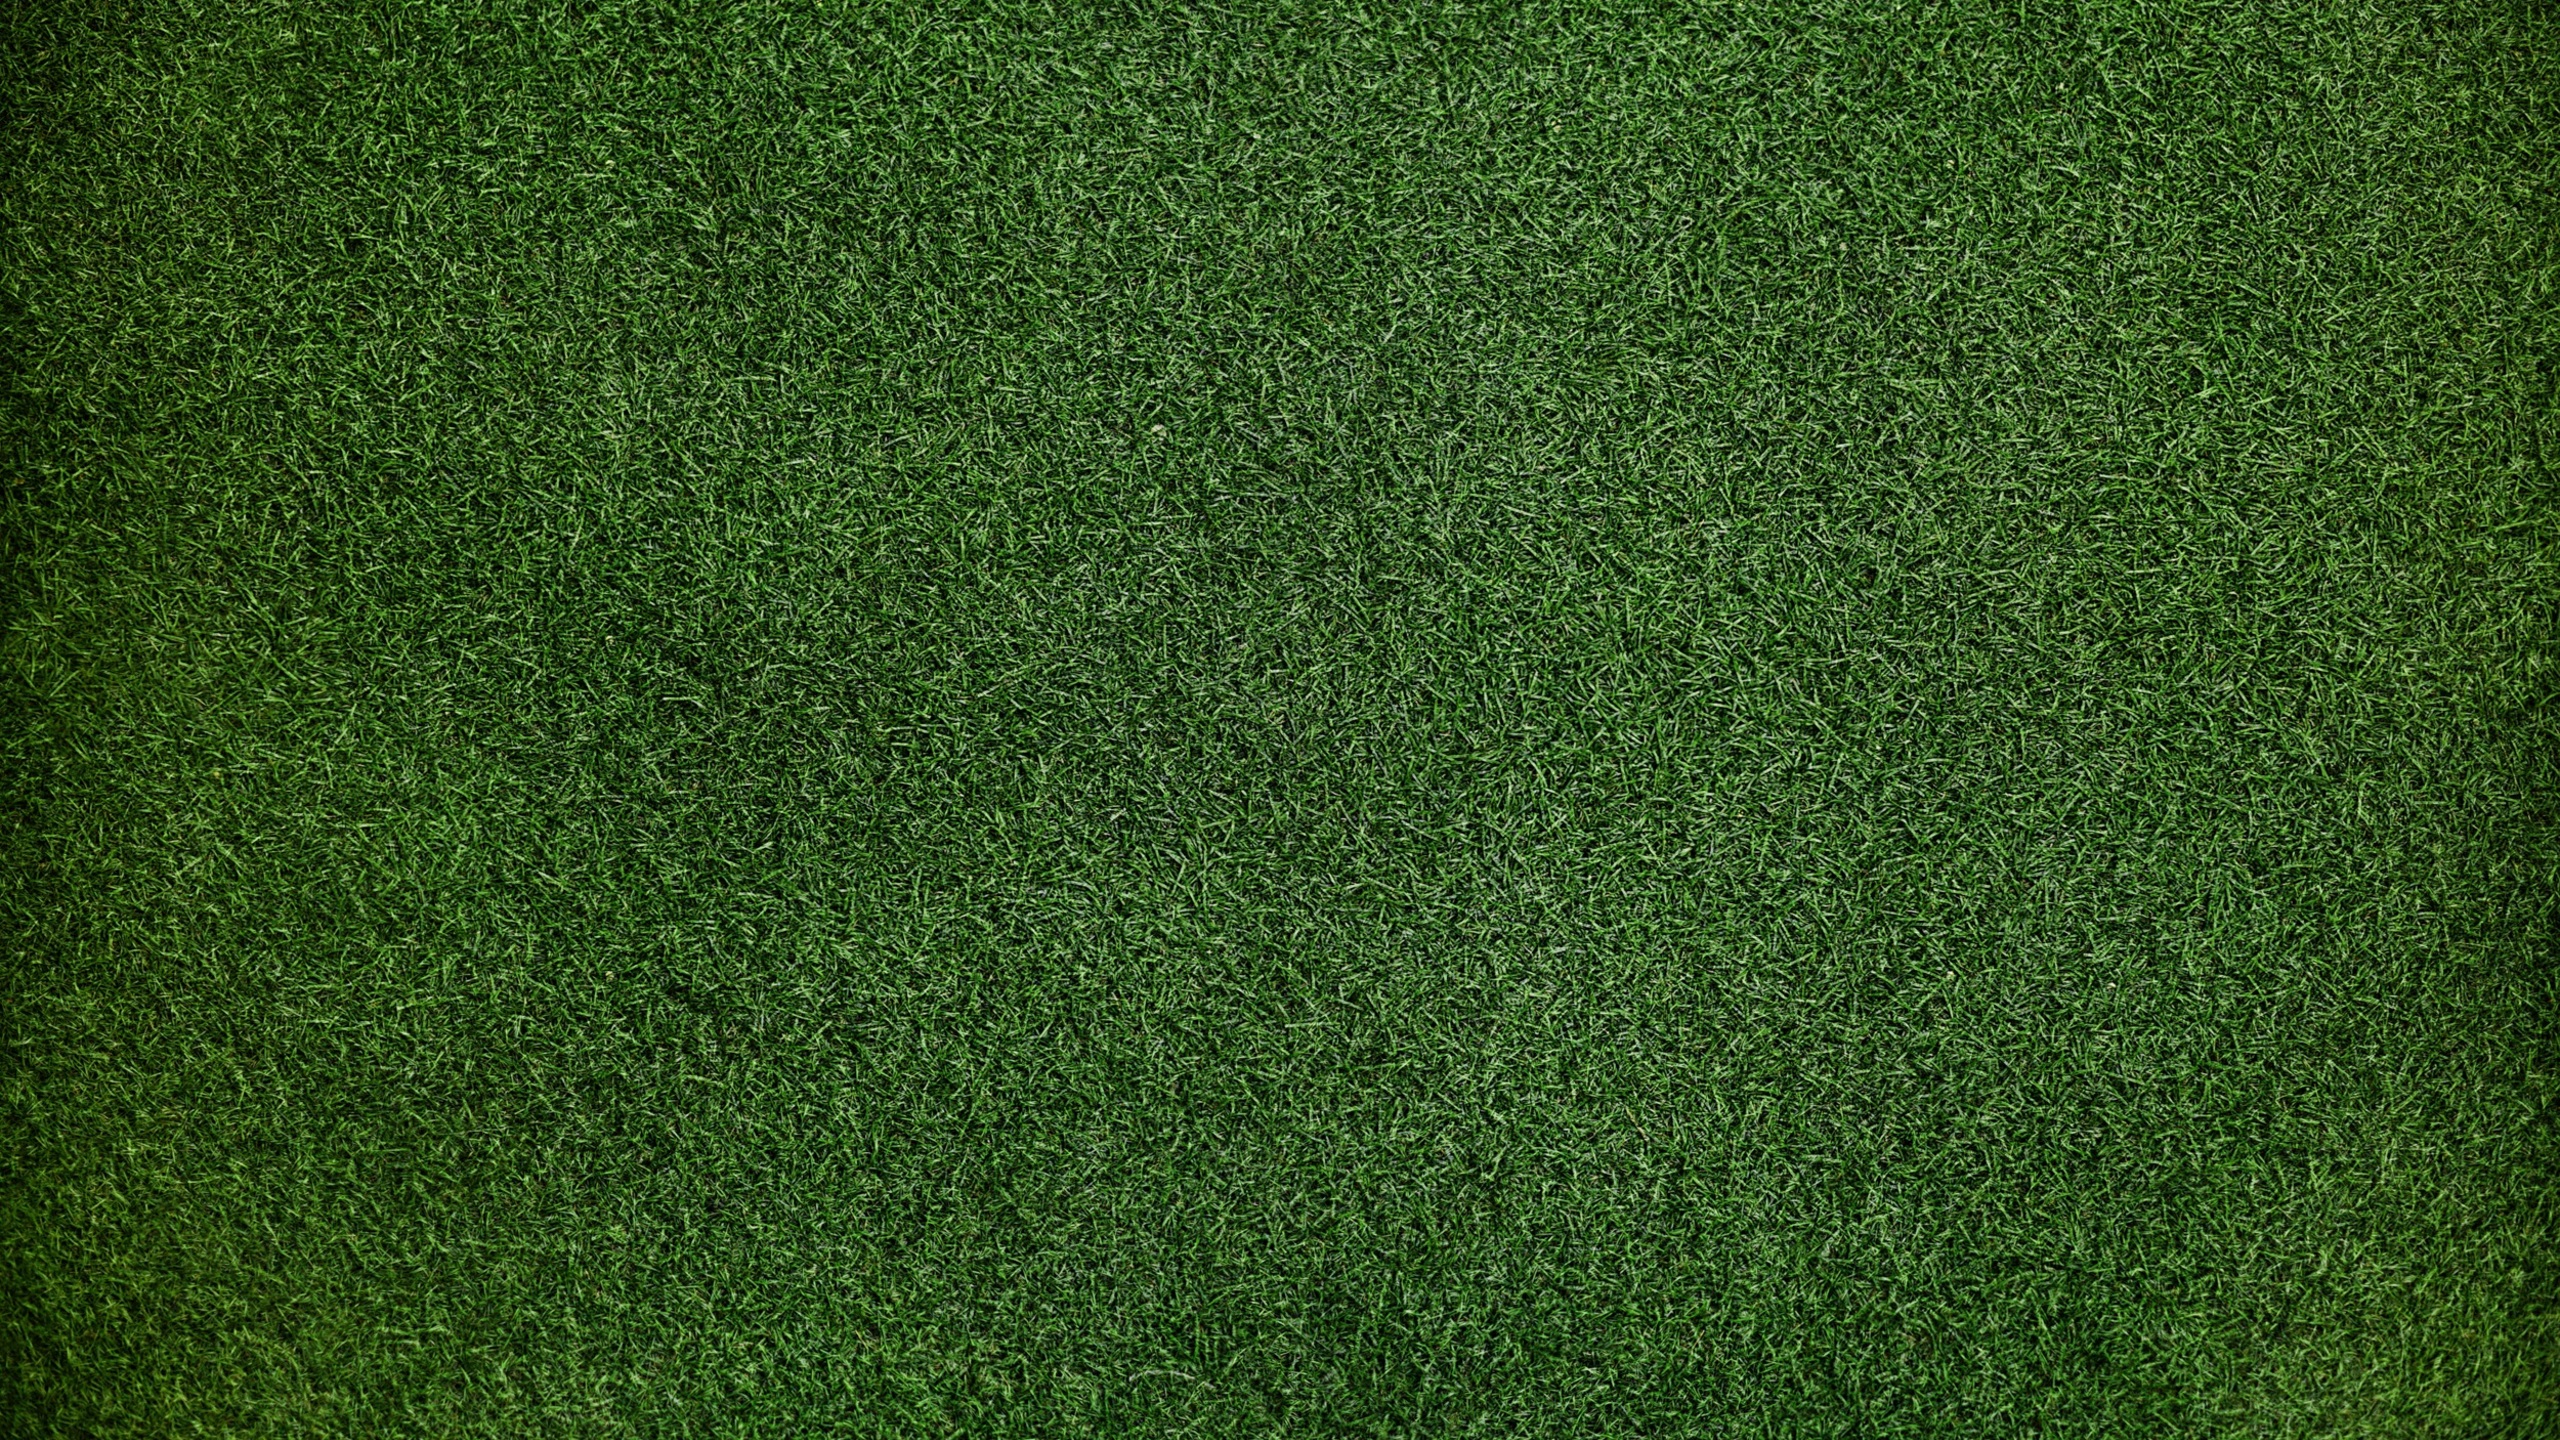 grass-background-1v-2560x1440.jpg